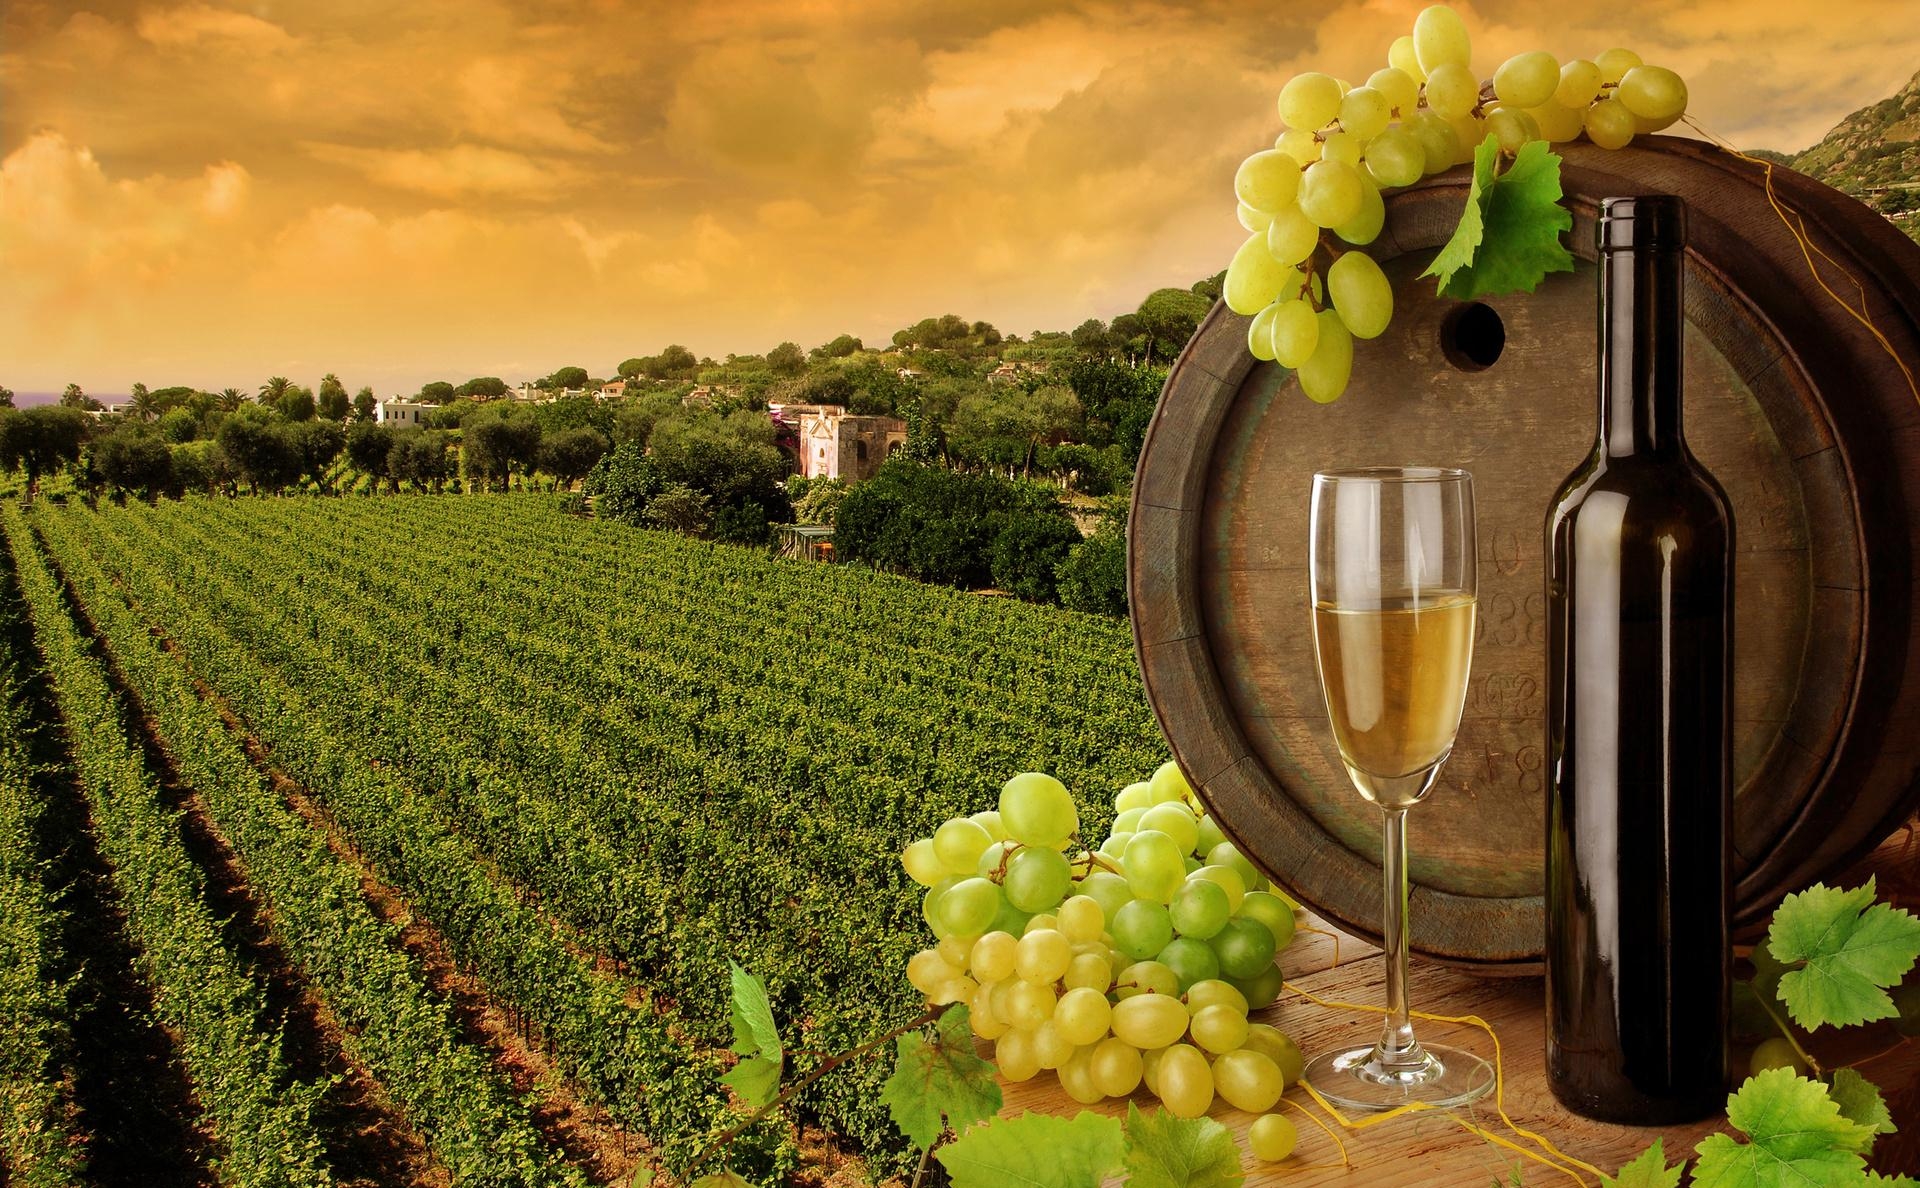 синдикат по выращиванию винограда и роизводству вина